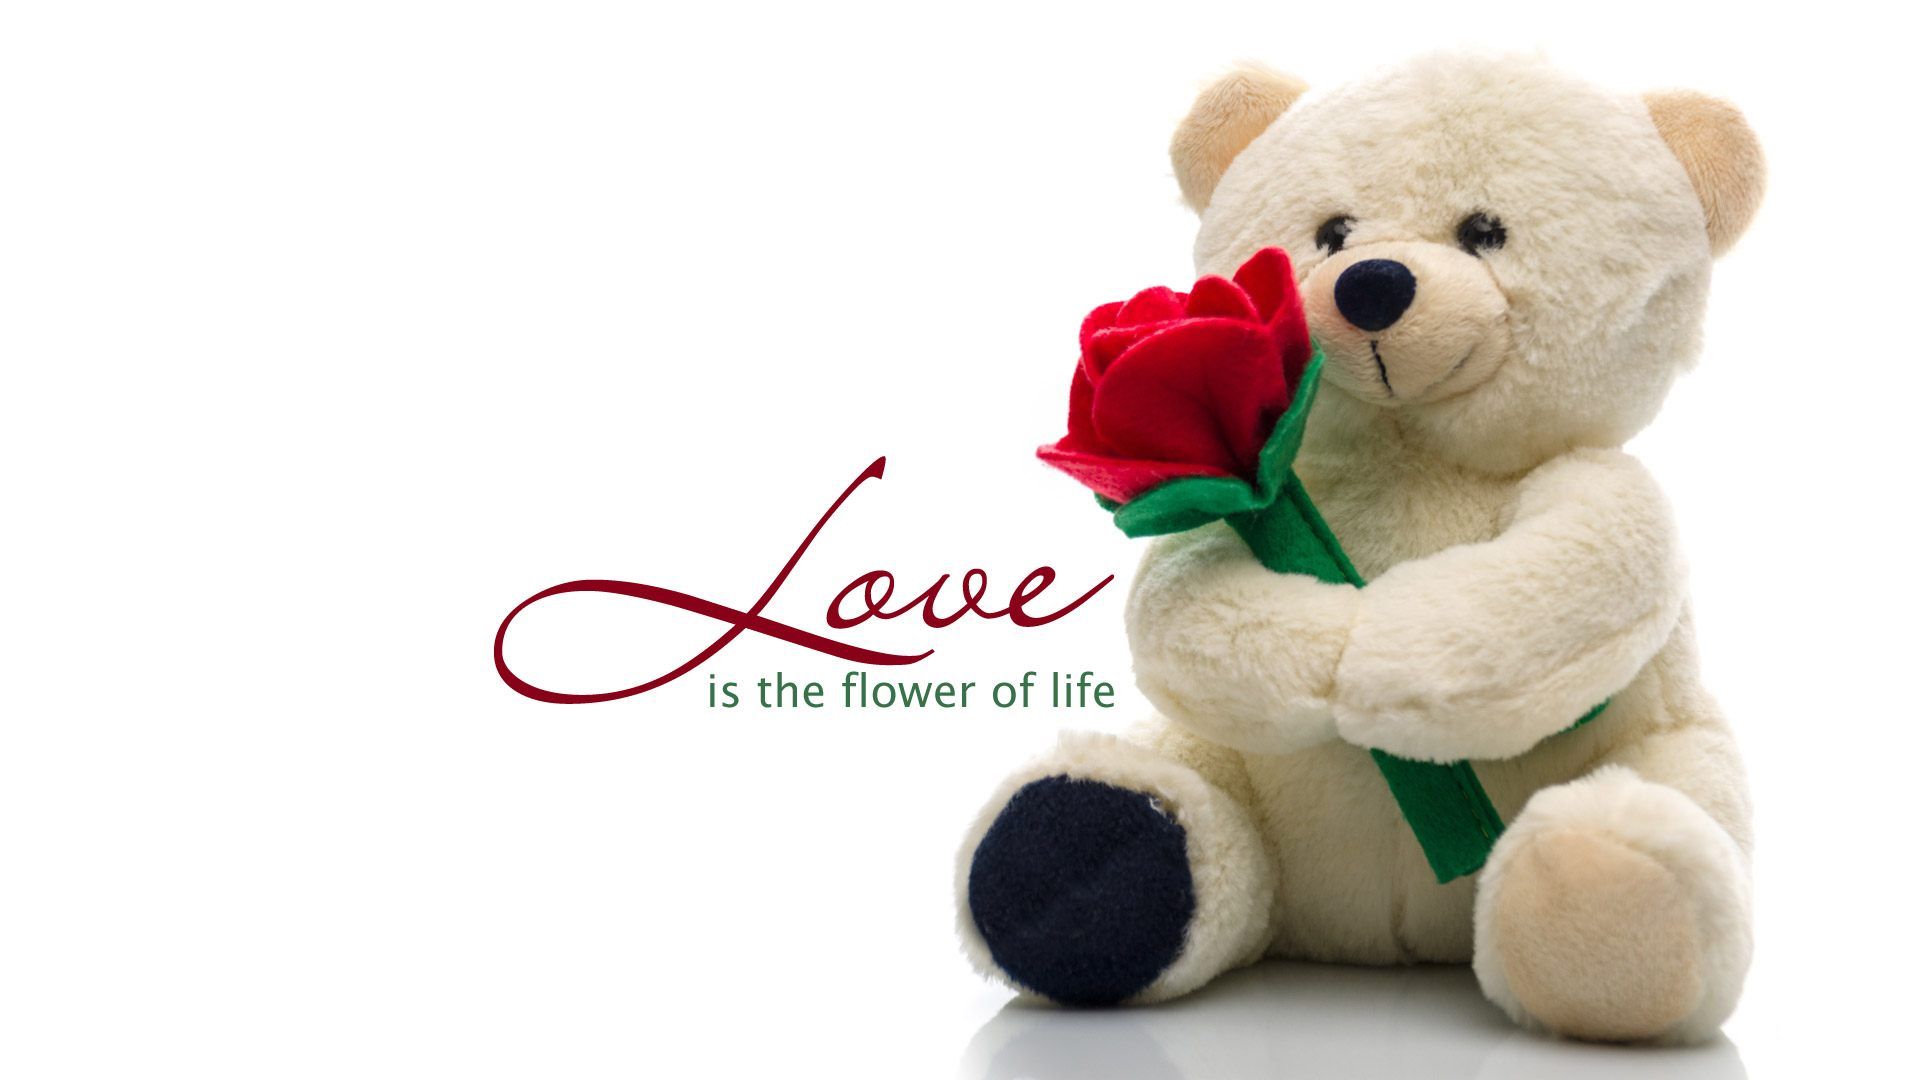 Cute Teddy Bear Wallpaper Of Love Free Download